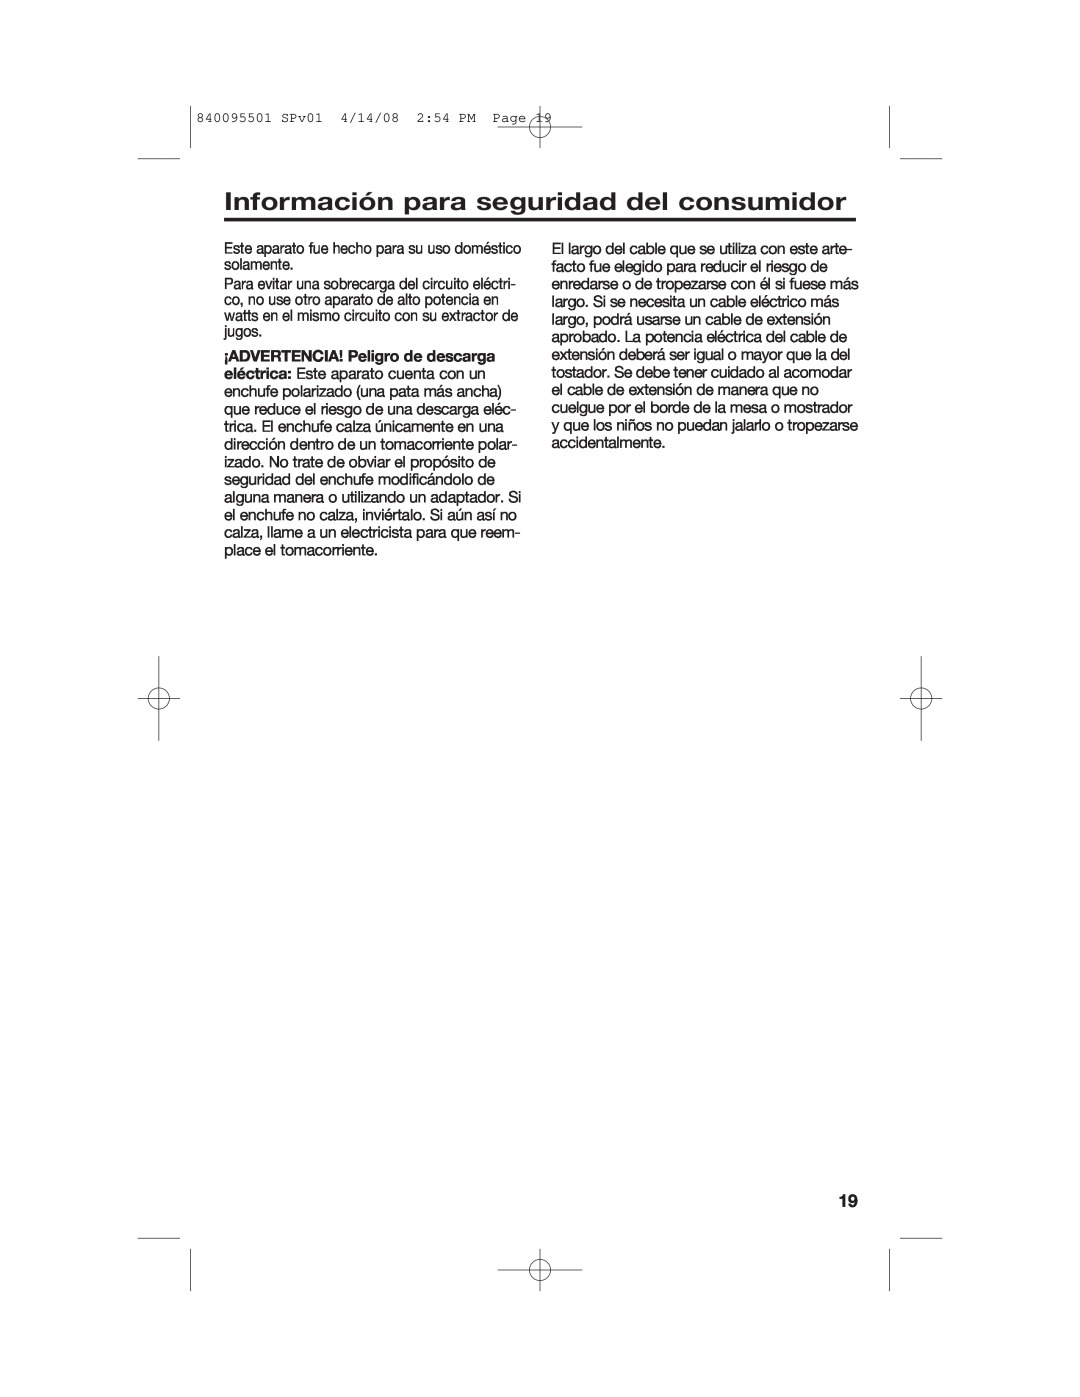 Hamilton Beach manual Información para seguridad del consumidor, 840095501 SPv01 4/14/08 2 54 PM Page 